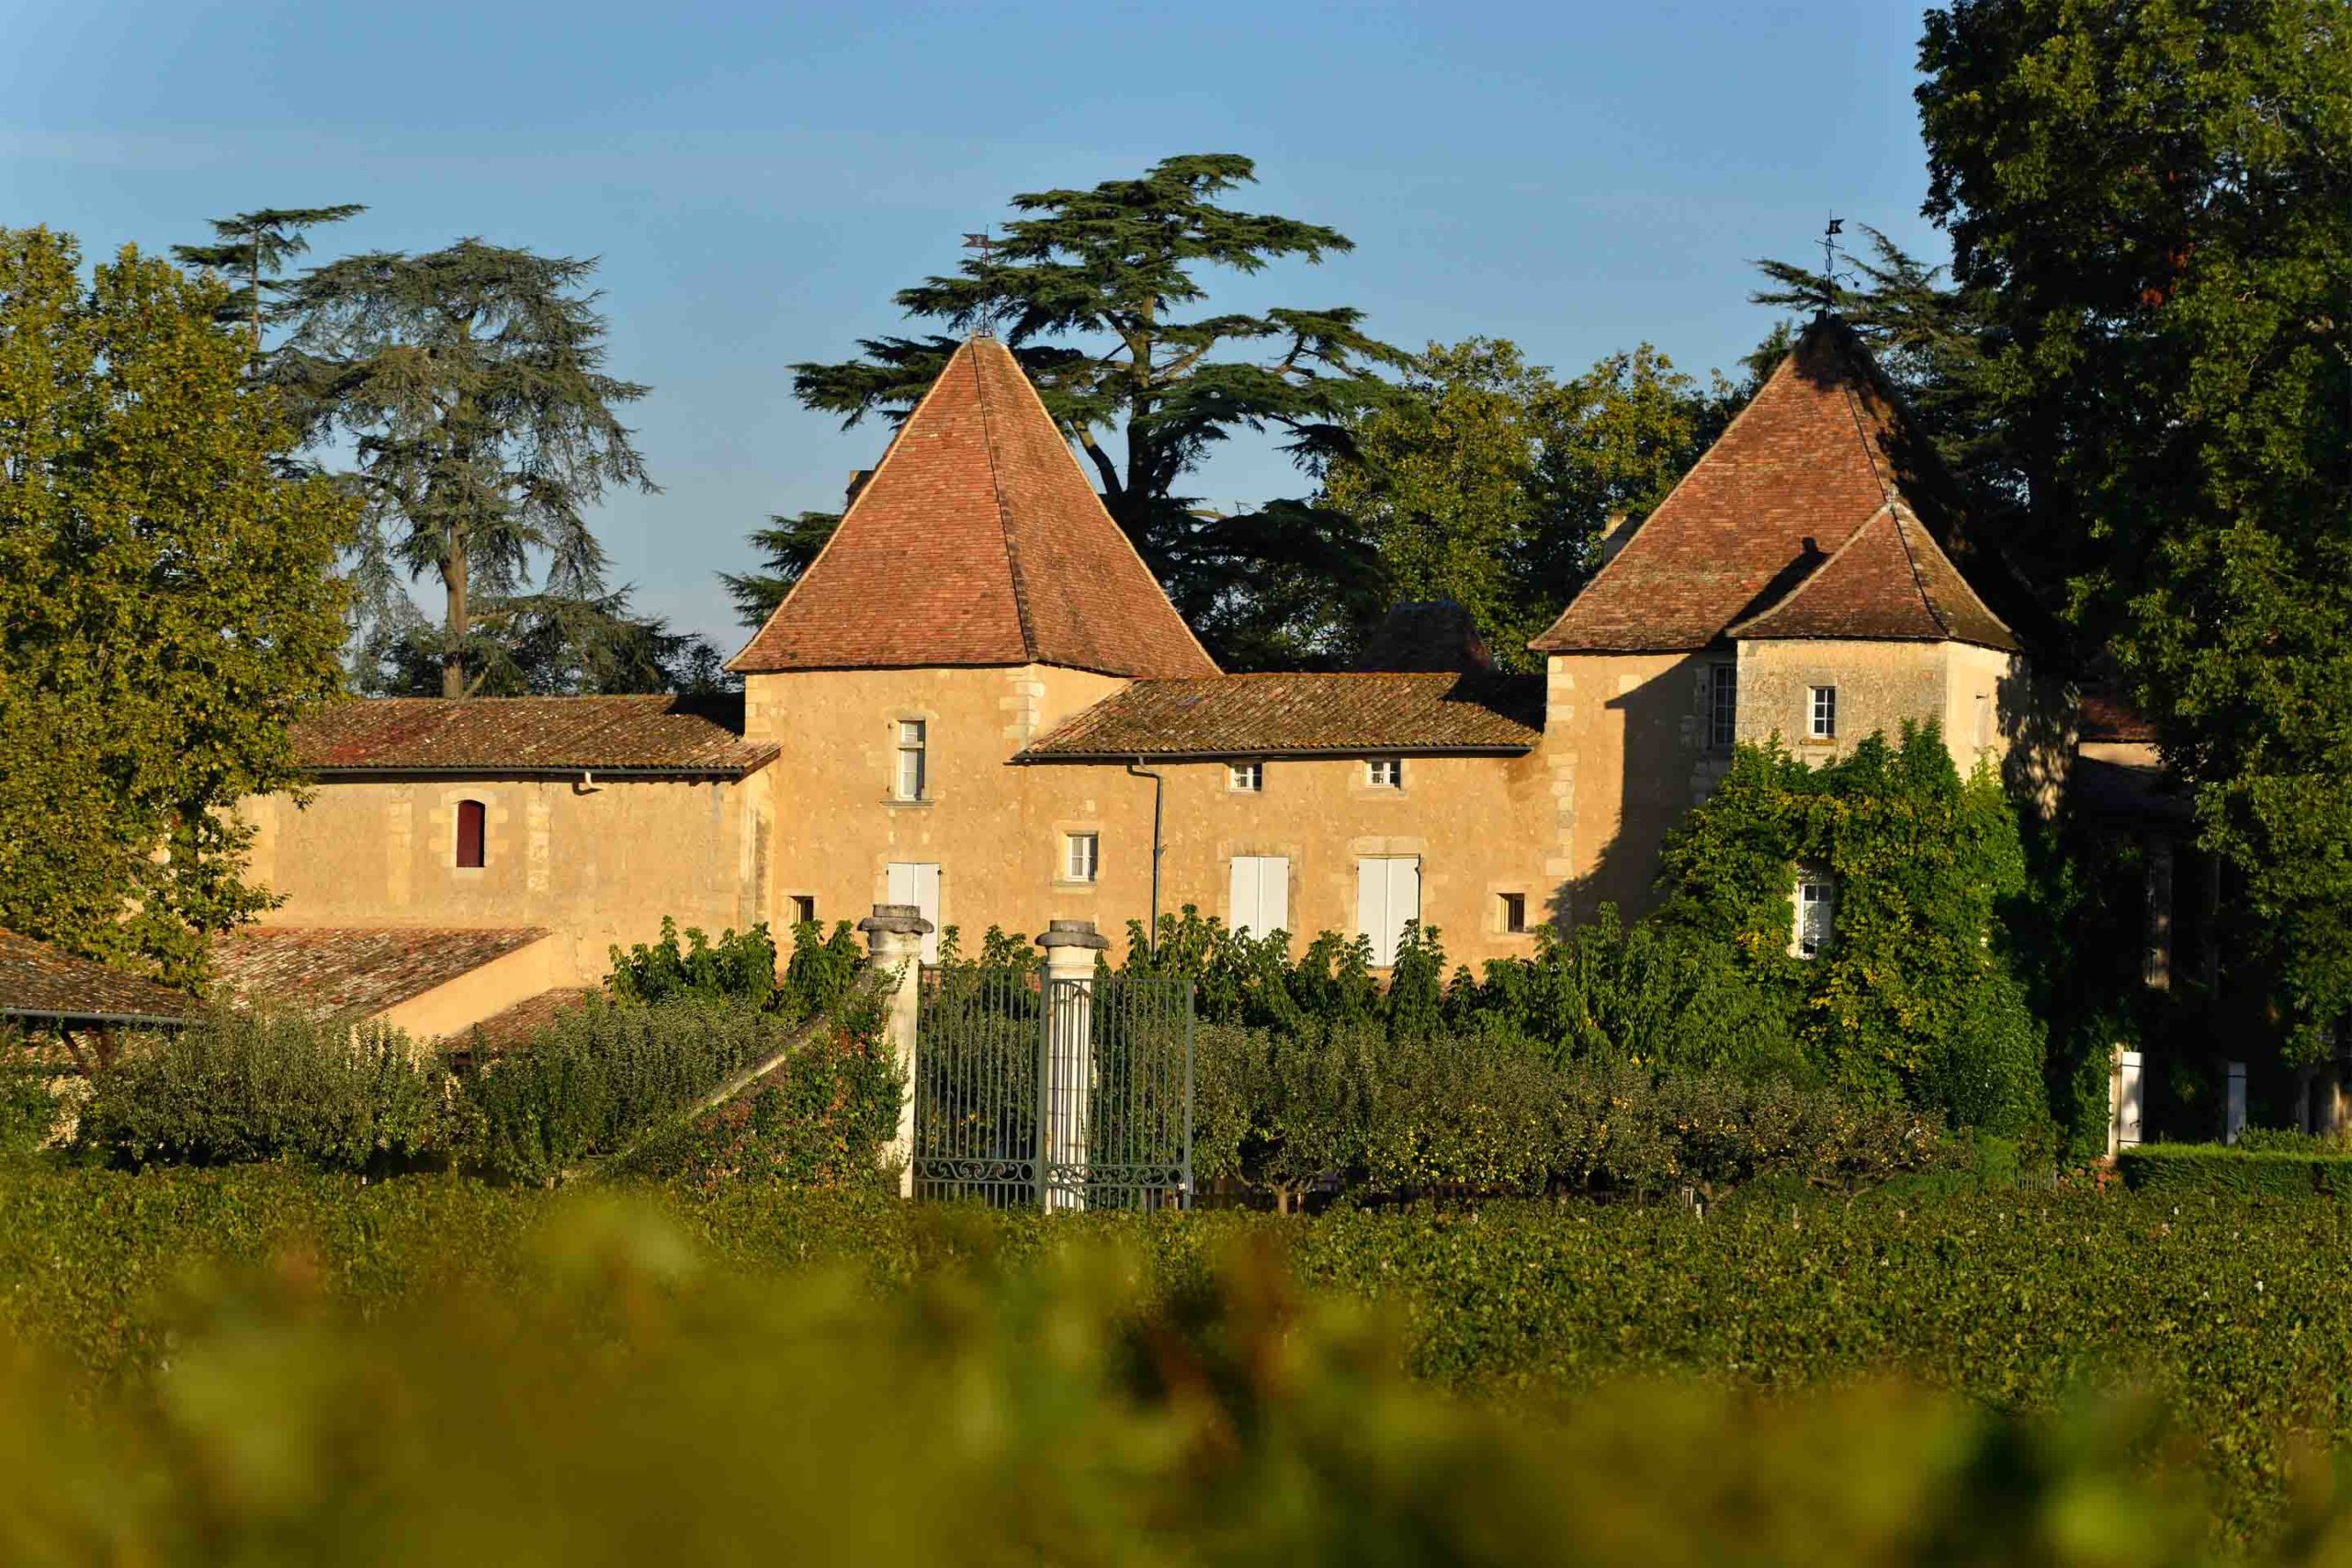 Chateau Carbonnieux